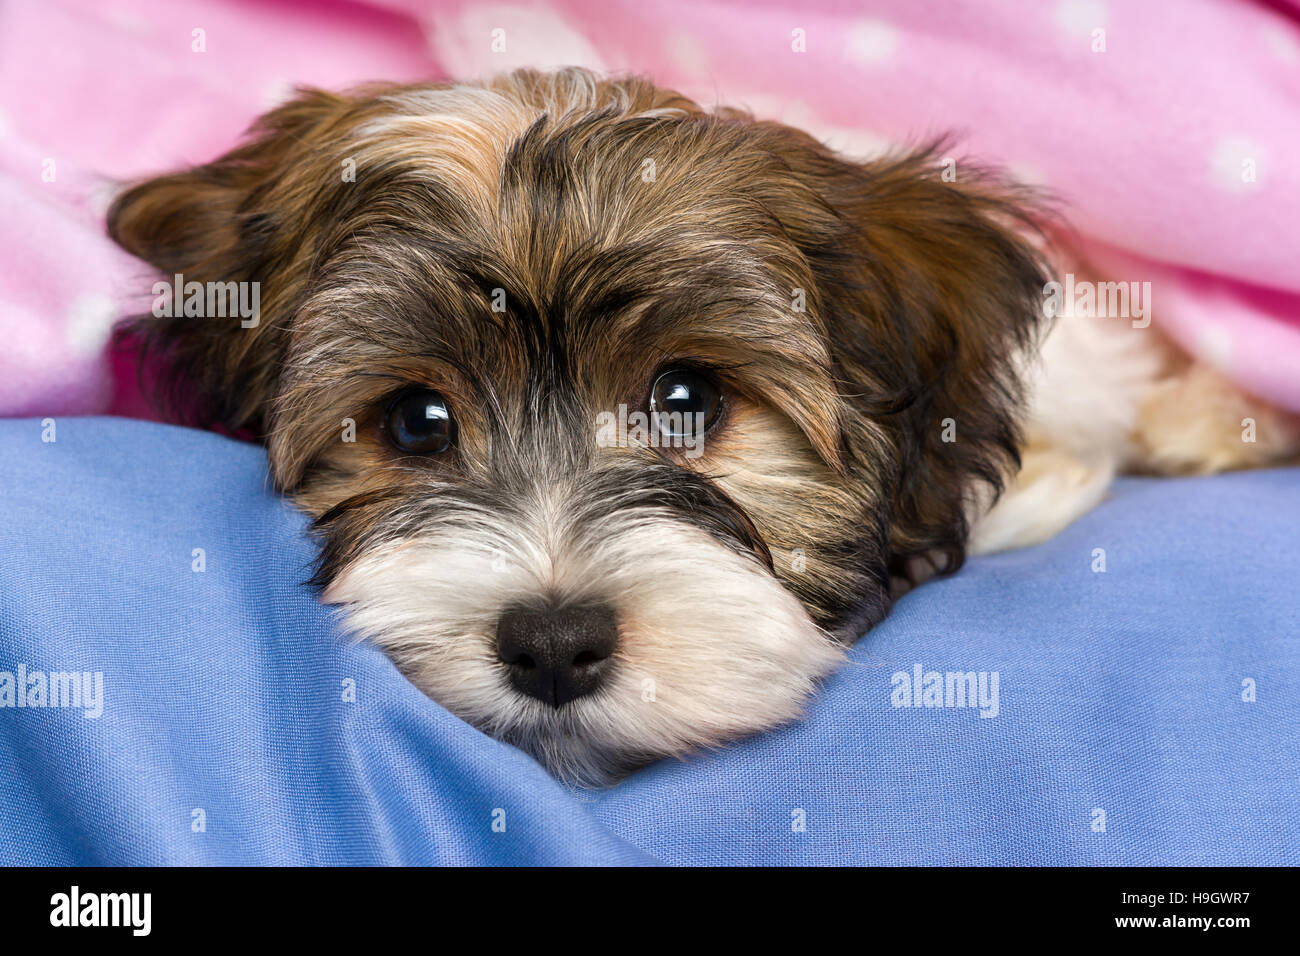 Close-up portrait of a cute little Havanese puppy tricolore chien est allongé sur un lit dans une couverture rose Banque D'Images